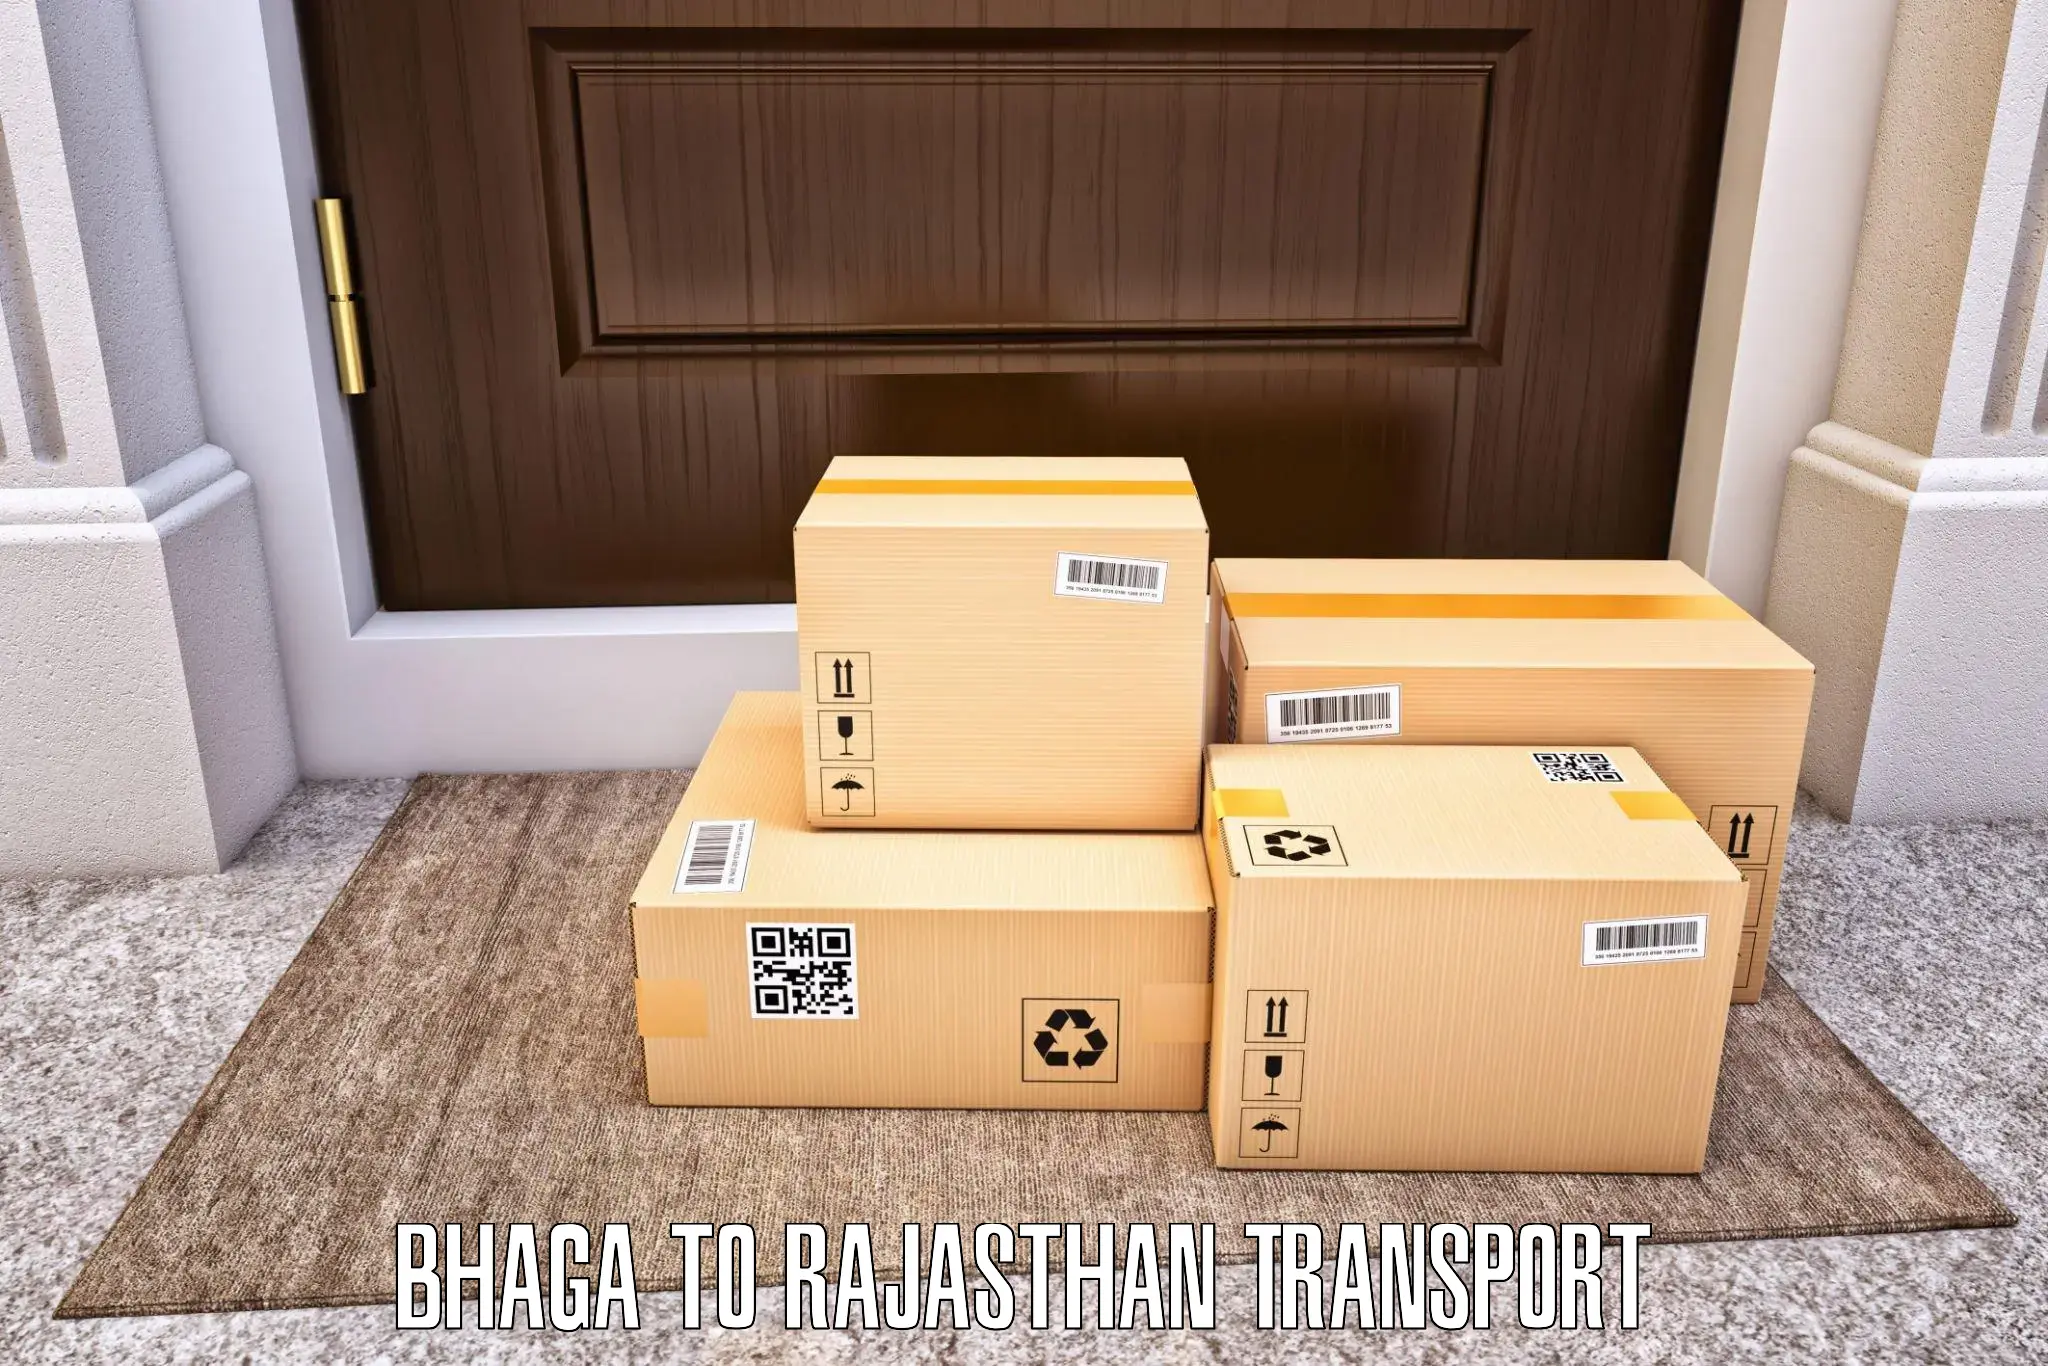 Delivery service Bhaga to Kumbhalgarh